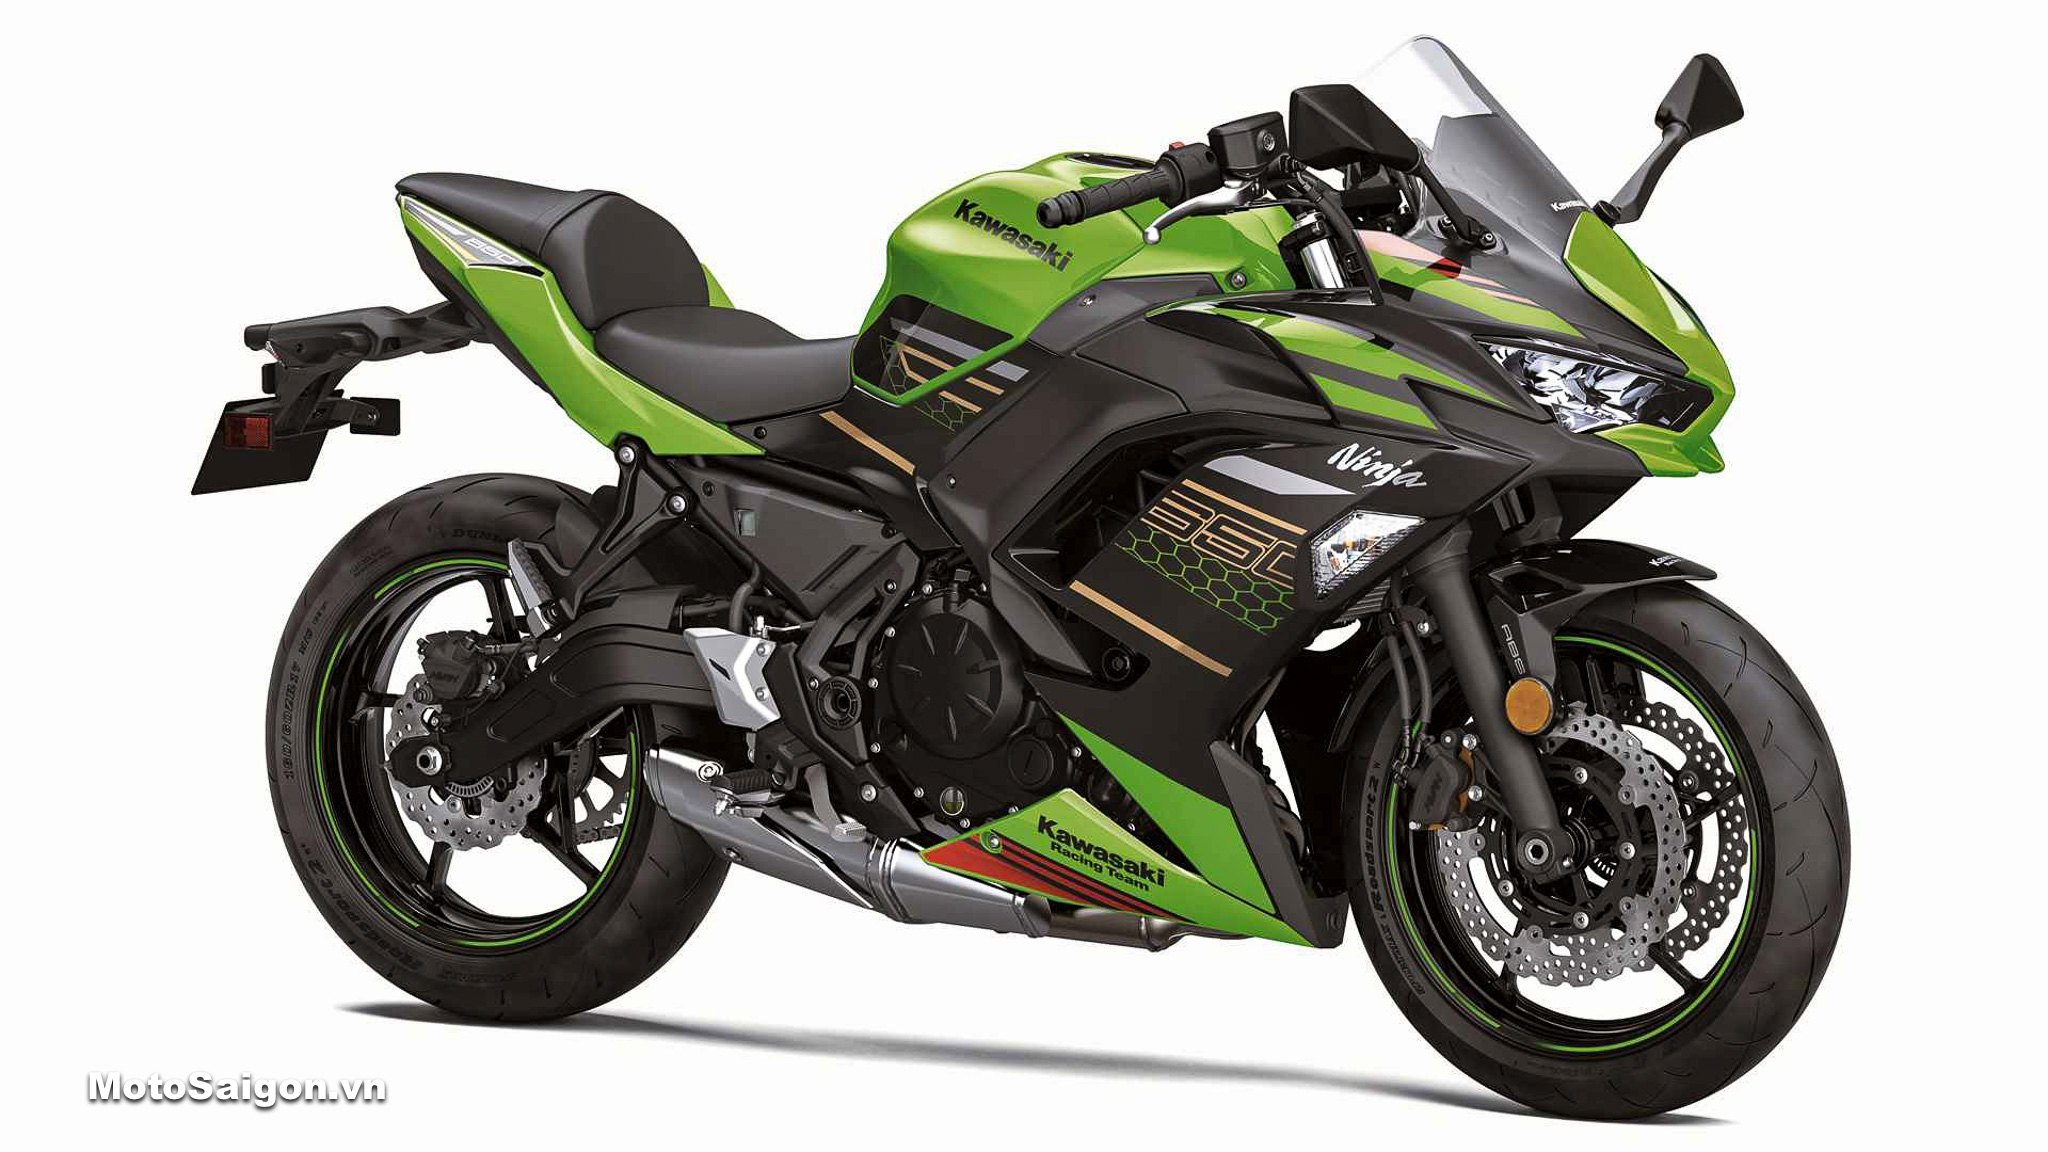 Kawasaki Ninja 650 hoàn toàn mới từ năm 2020 đã có sẵn để bán